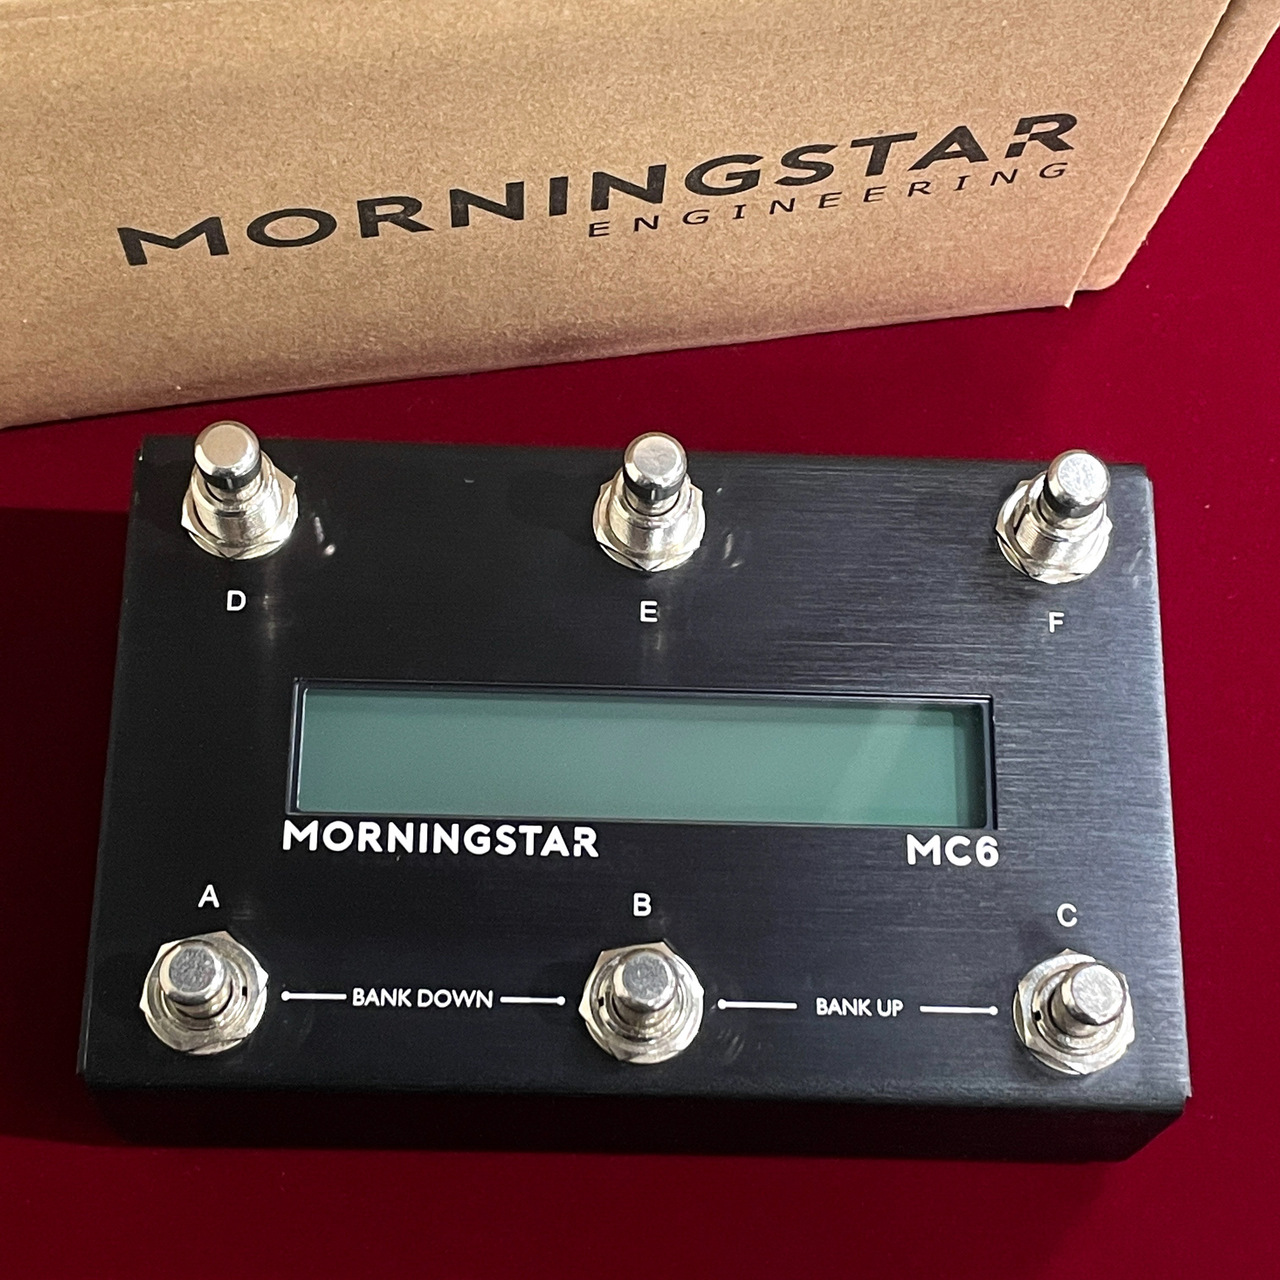 通販サイト東京 Morningstar FX MC6 MKII MIDIコントローラー エフェクター